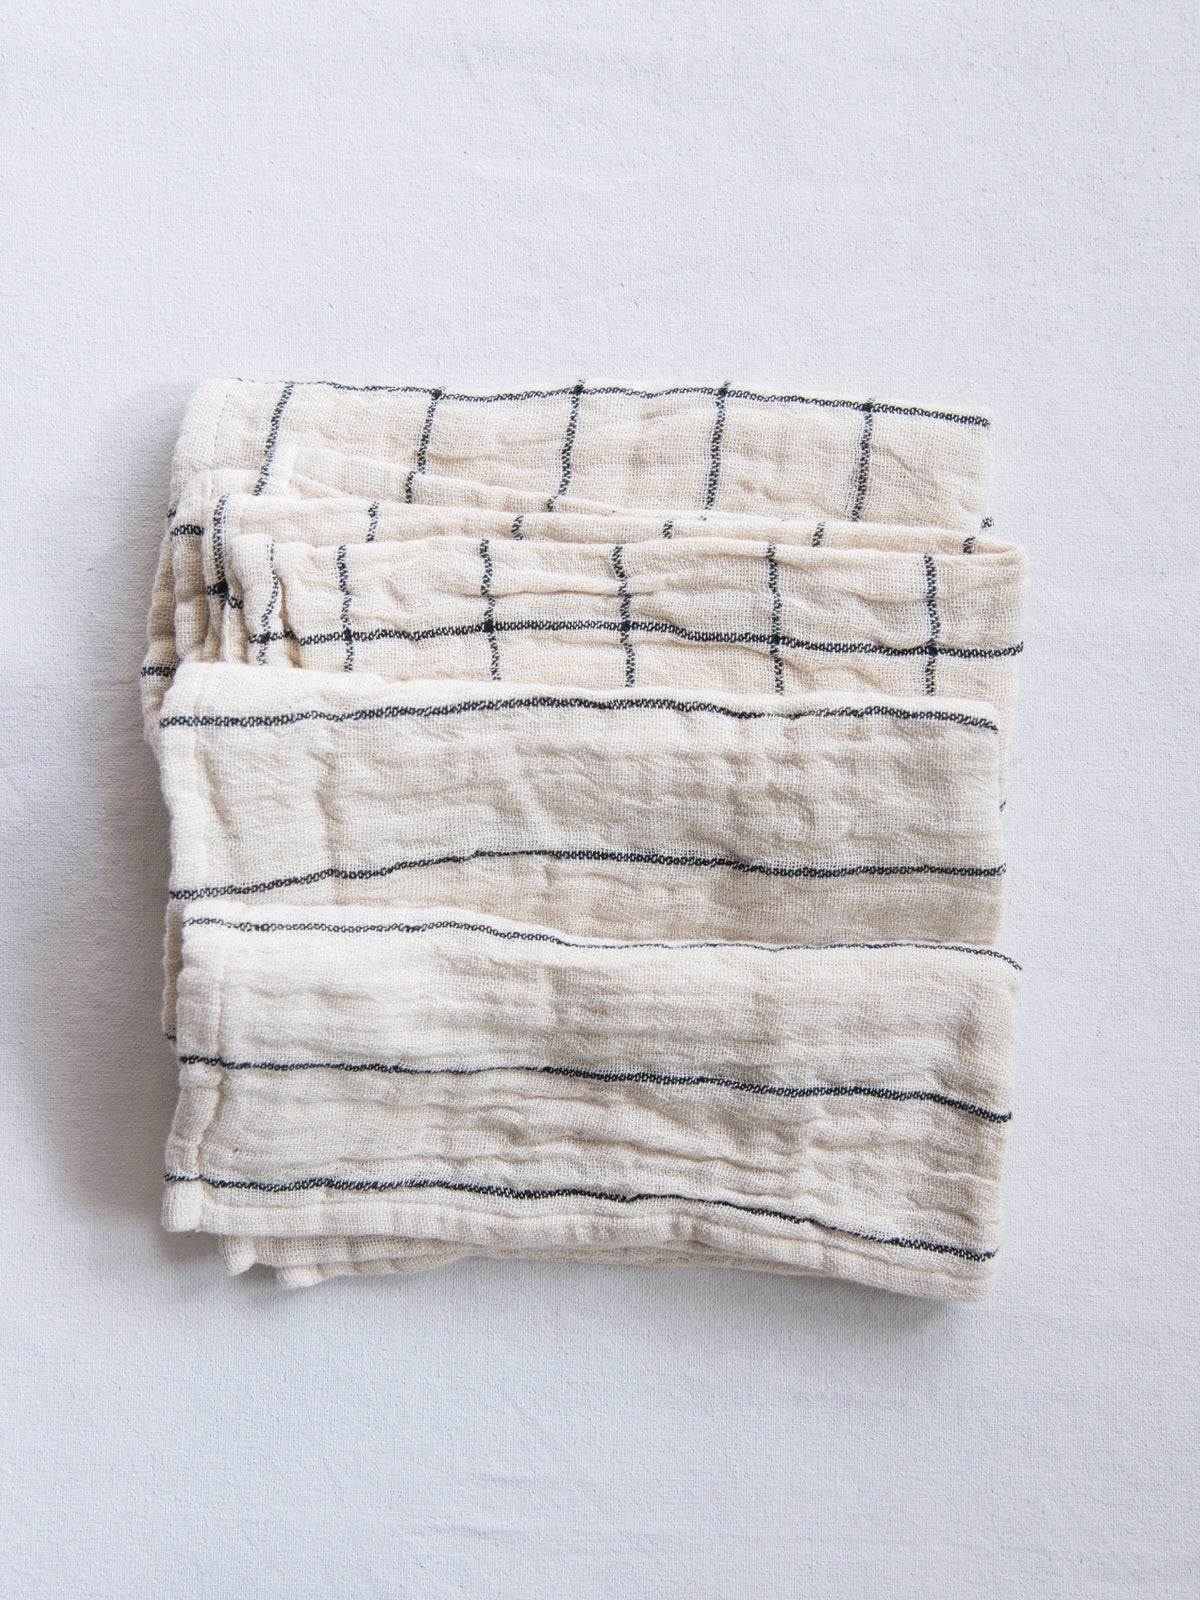 Stripe/Plaid Woven Napkin, Set of 4